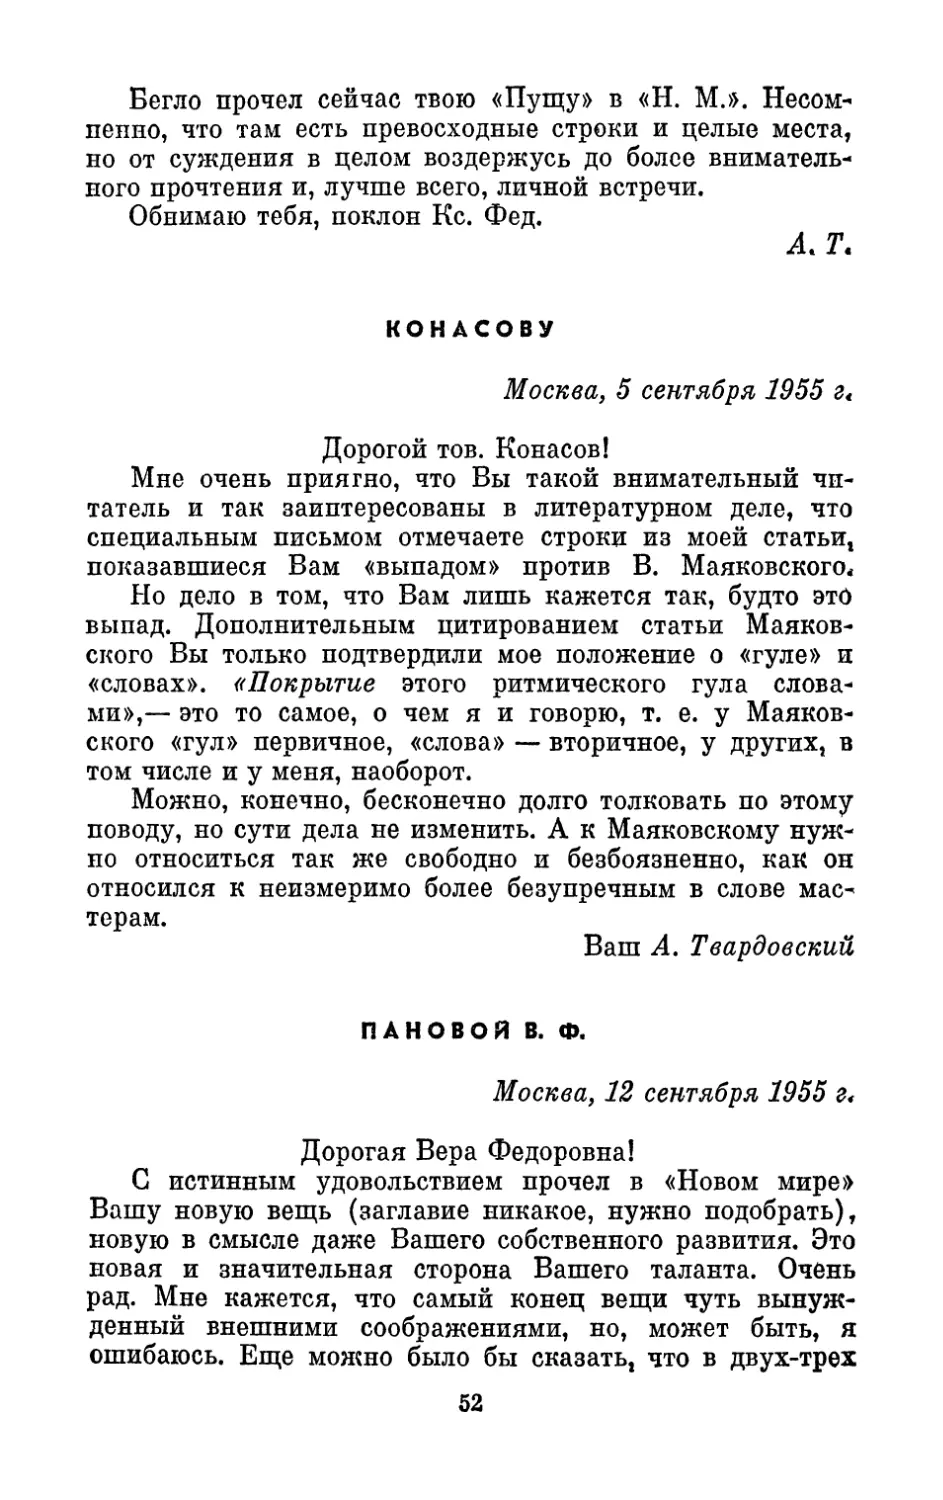 Конасову, 5 сентября 1955 г.
Пановой В. Ф., 12 сентября 1955 г.